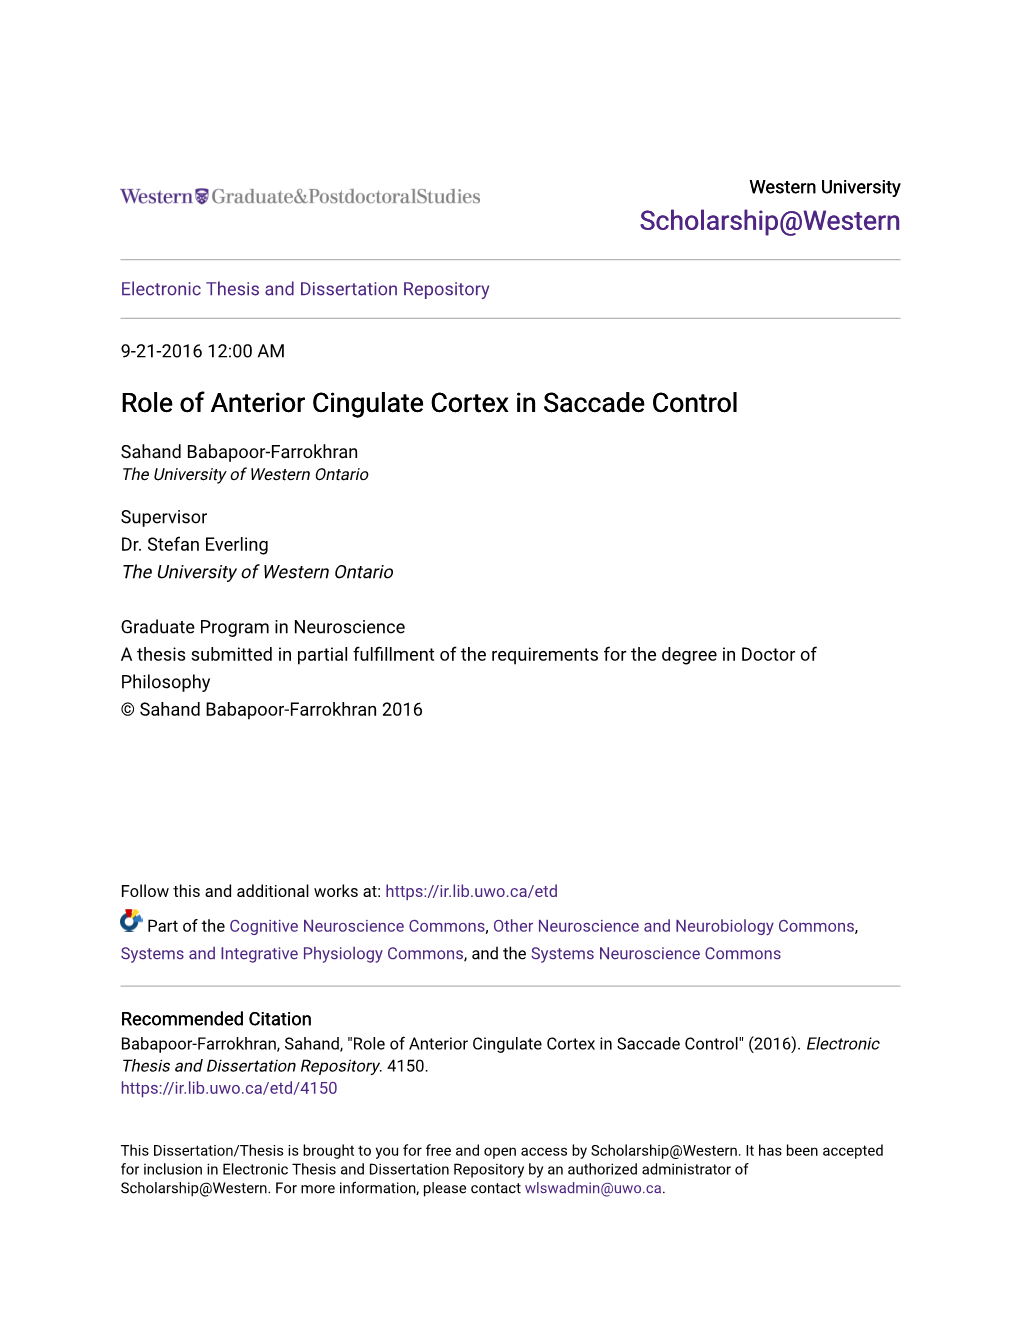 Role of Anterior Cingulate Cortex in Saccade Control